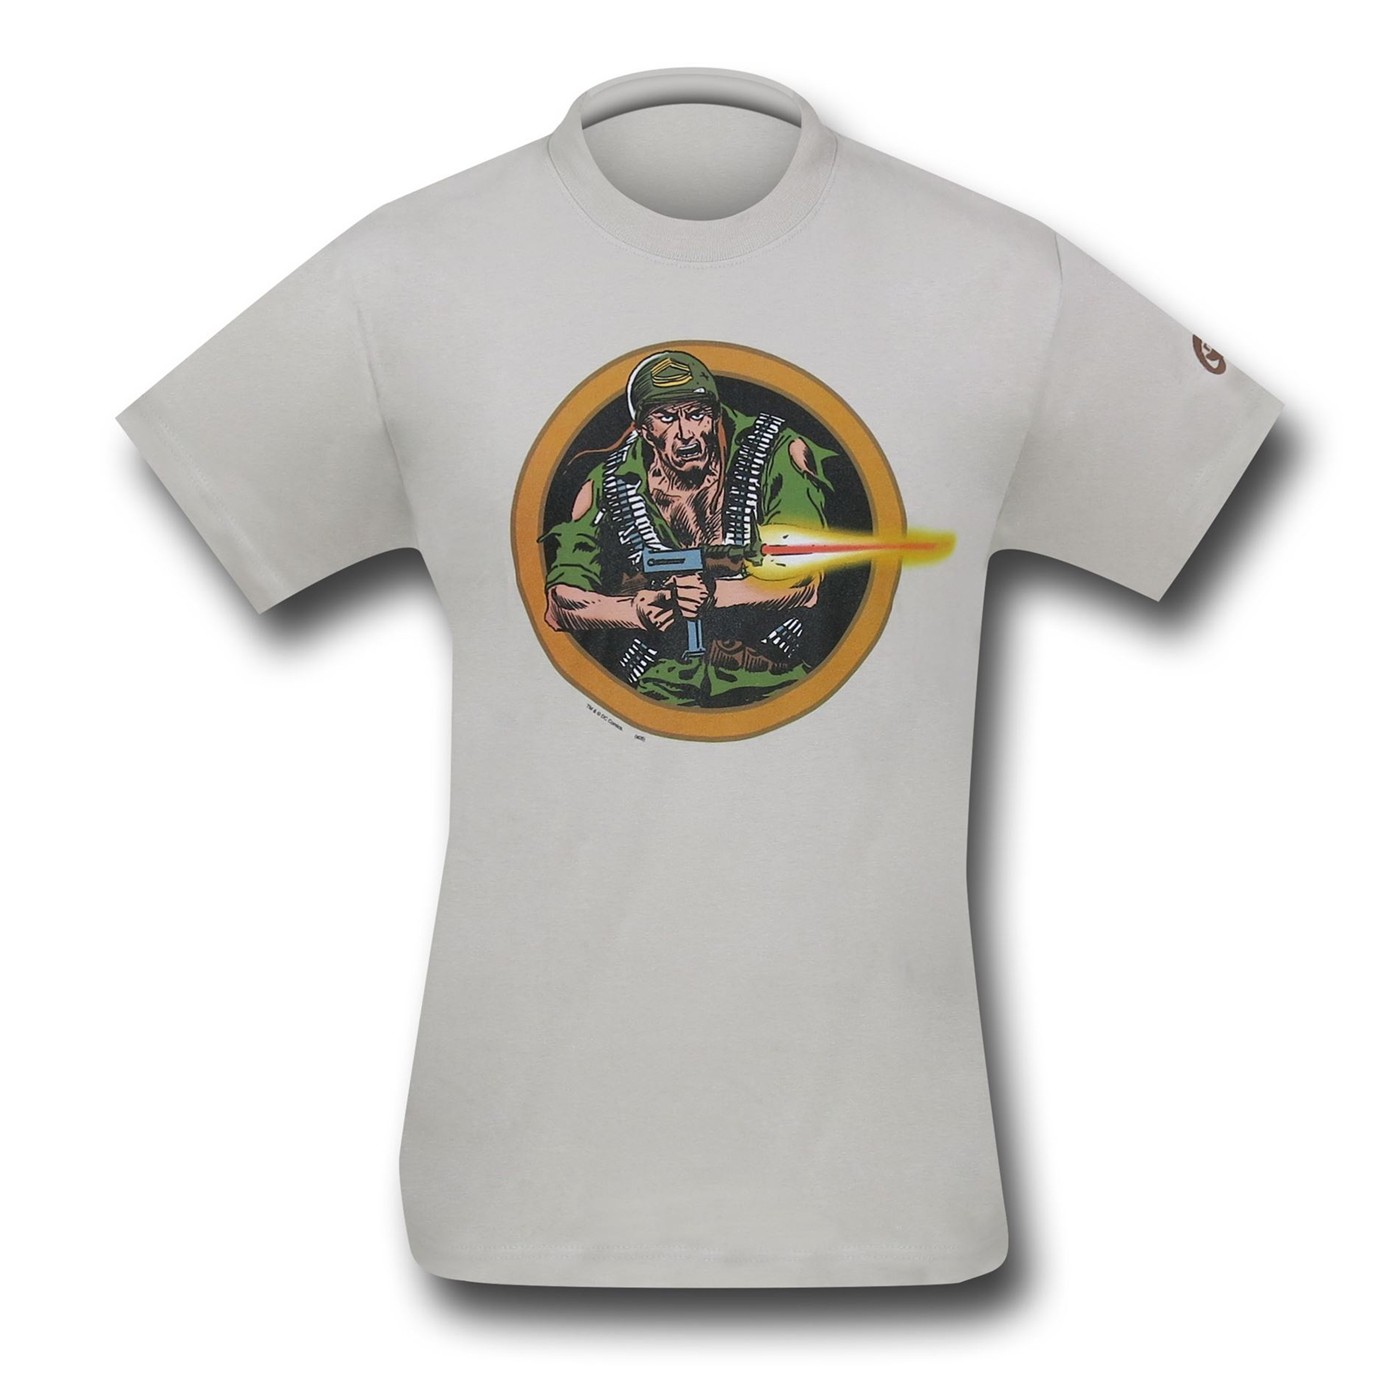 Sgt Rock Attack T-Shirt by Joe Kubert